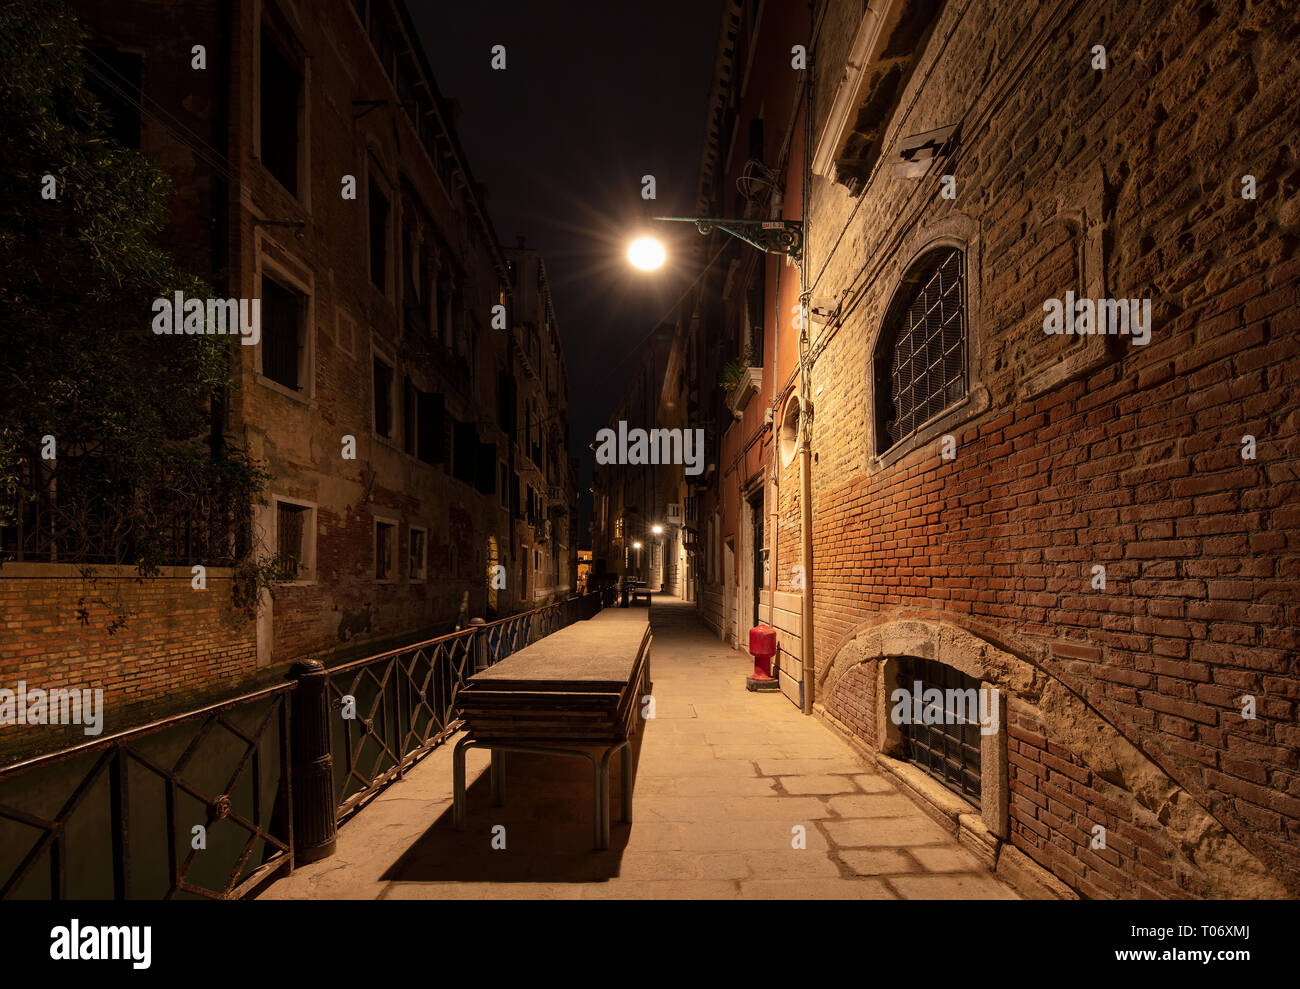 Chiedo round Venezia è uno spettacolo per gli occhi. Questa bellissima città è facile da fotografare. Foto Stock